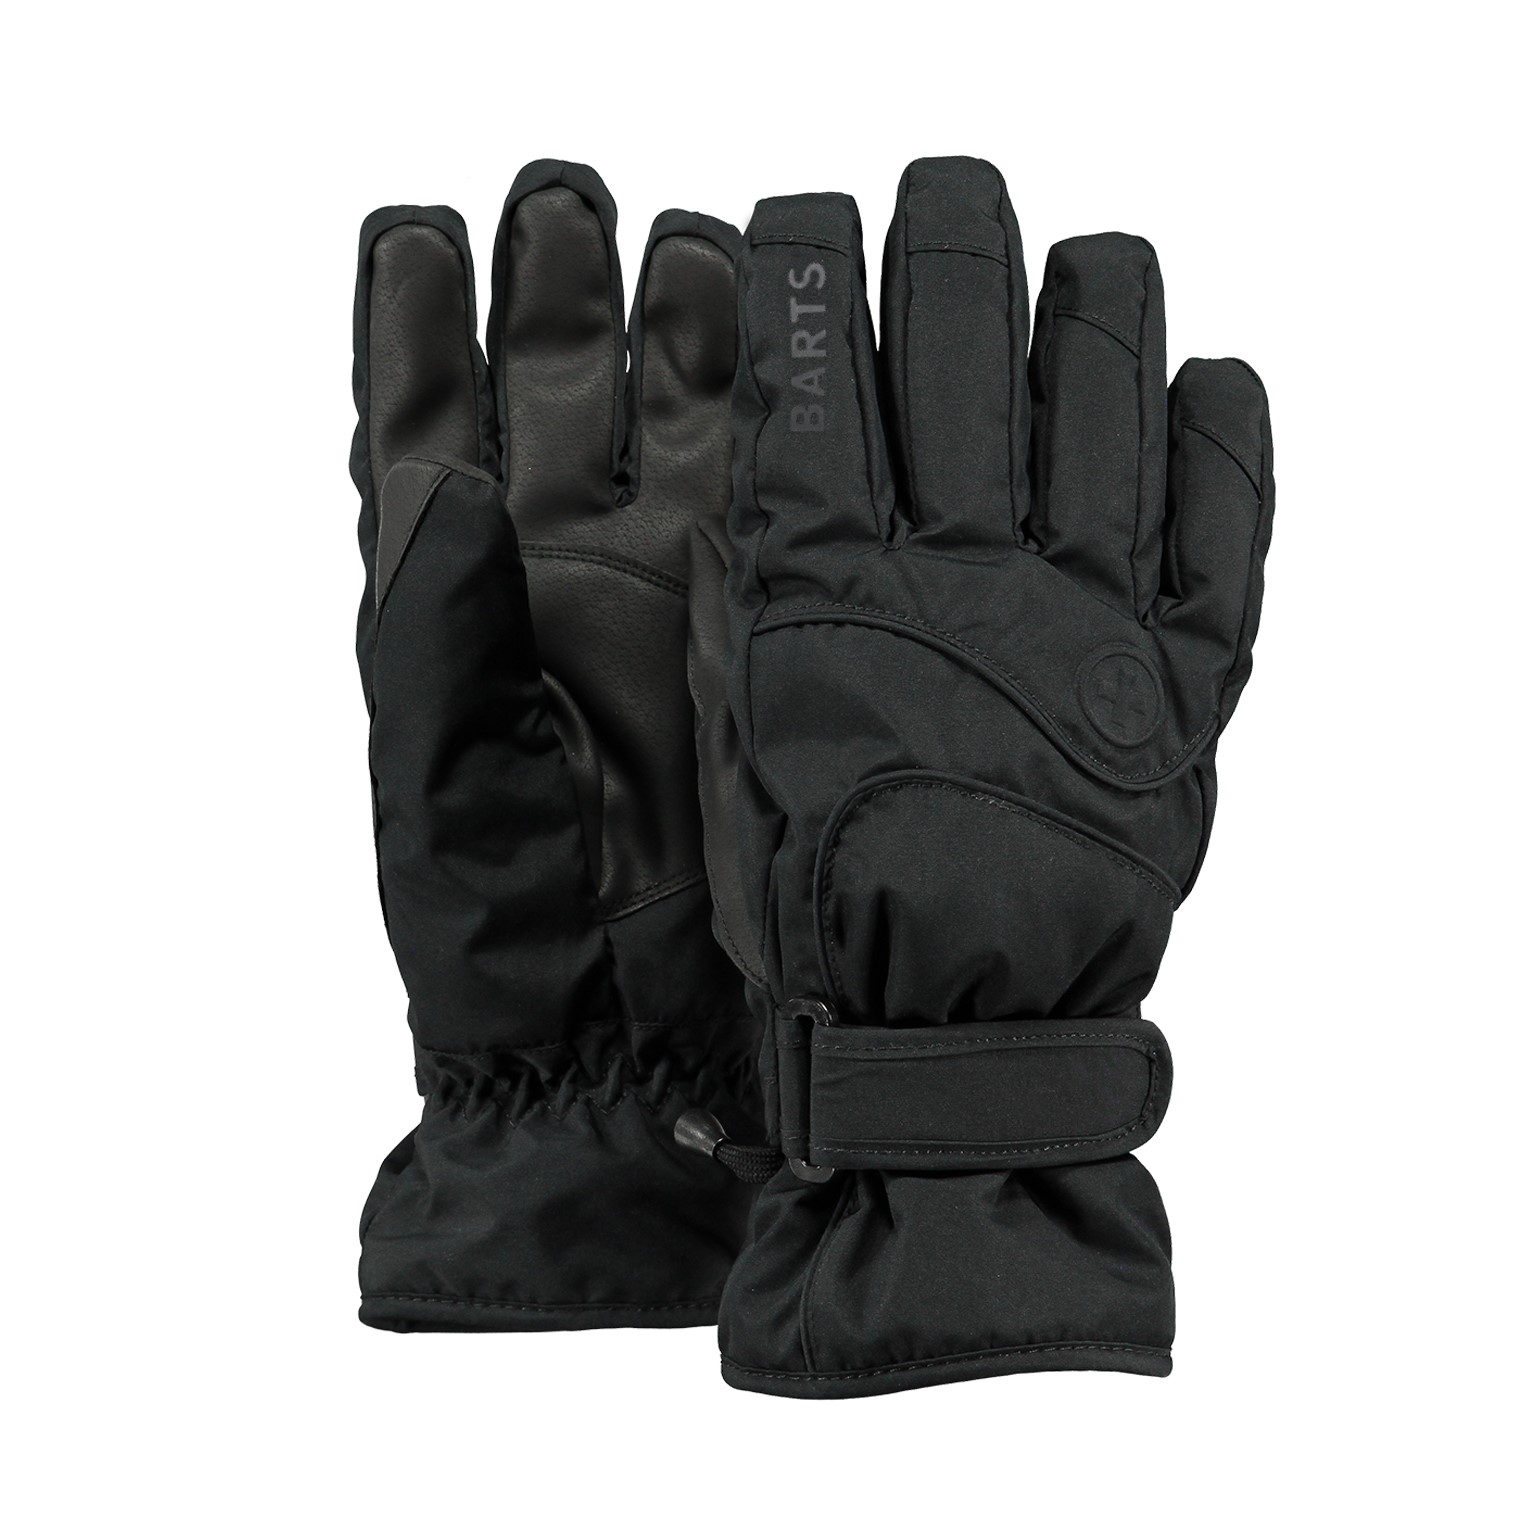 Accessoires Handschoenen & wanten Winterhandschoenen gemakkelijk te dragen comfortabel handig Gezellig deze vingerloze handschoenen zouden een geweldig cadeau zijn 